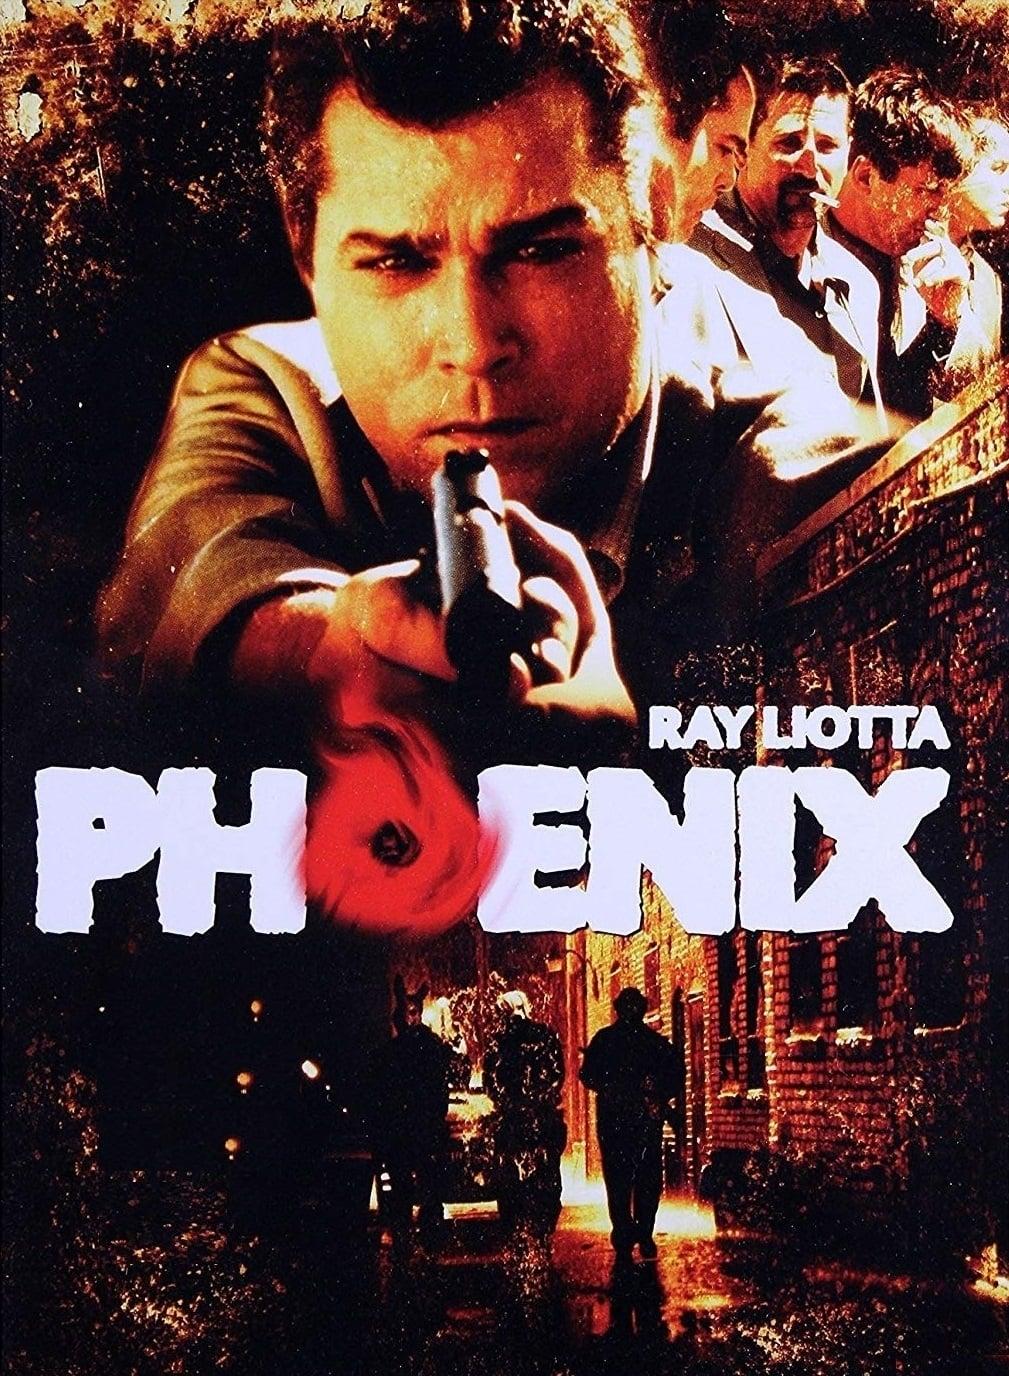 Phoenix poster